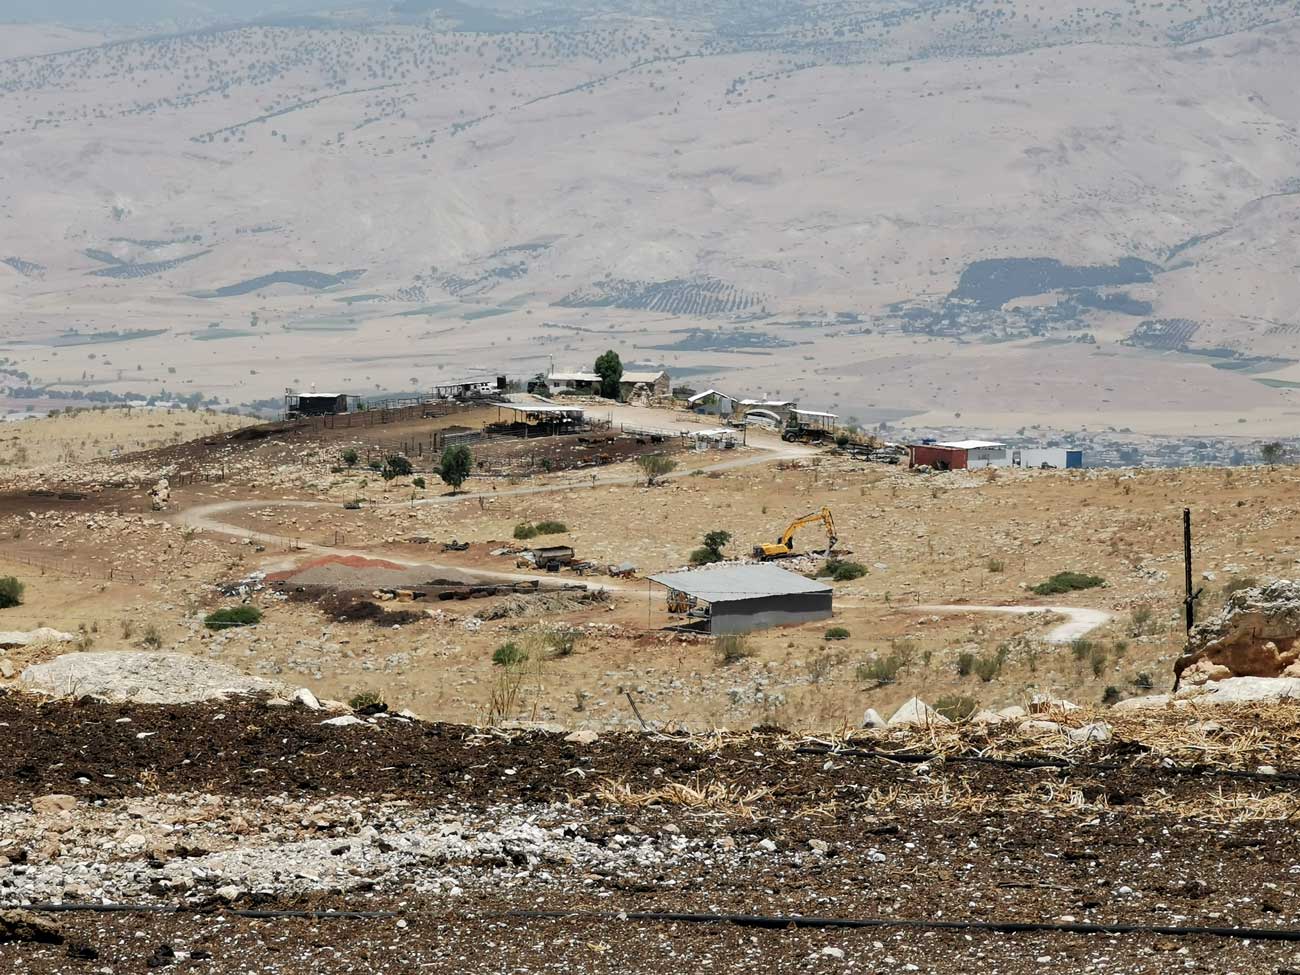 "المزرعة الاستيطانية أم زوكا" هي واحدة من ست "مزارع" أنشأها مستوطنون في الأغوار الشمالية خلال السنوات الخمس الأخيرة. أقيمت هذه "المزرعة" في نهاية العام 2016 في موقع كانت تقع فيه قرية فلسطينية تدعى خربة المزوقح والتي دمرتها إسرائيل بعد احتلال الضفة الغربية. وفقًا لحسابات مؤسسة "كيرم نفوت" التي أُعدت حسب طلب بتسيلم فإن مستوطني "المزرعة الاستيطانية أم زوكا" استولوا على 14,979 دونم أي نحو ثلثي مساحة المحمية الطبيعية. قام المستوطنون حتى الآن بفلاحة 99 دونم من هذه المساحة. تصوير: ايال هاروفيني, بتسيلم.